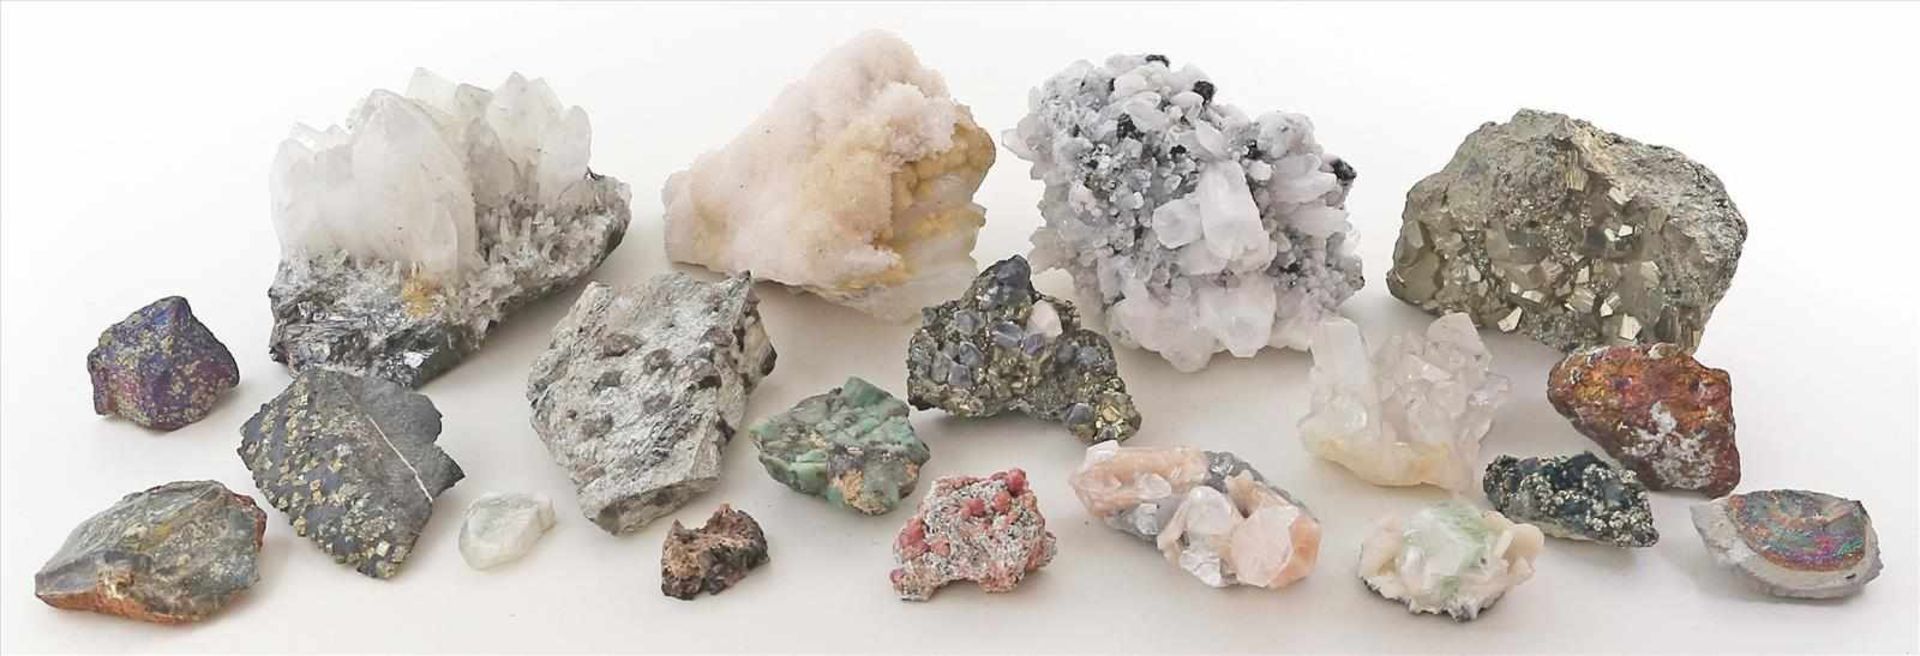 Konvolut von ca. 17 verschiedenen Mineralienstufen.Dabei u.a. Granat, Bergkristall, u.a.